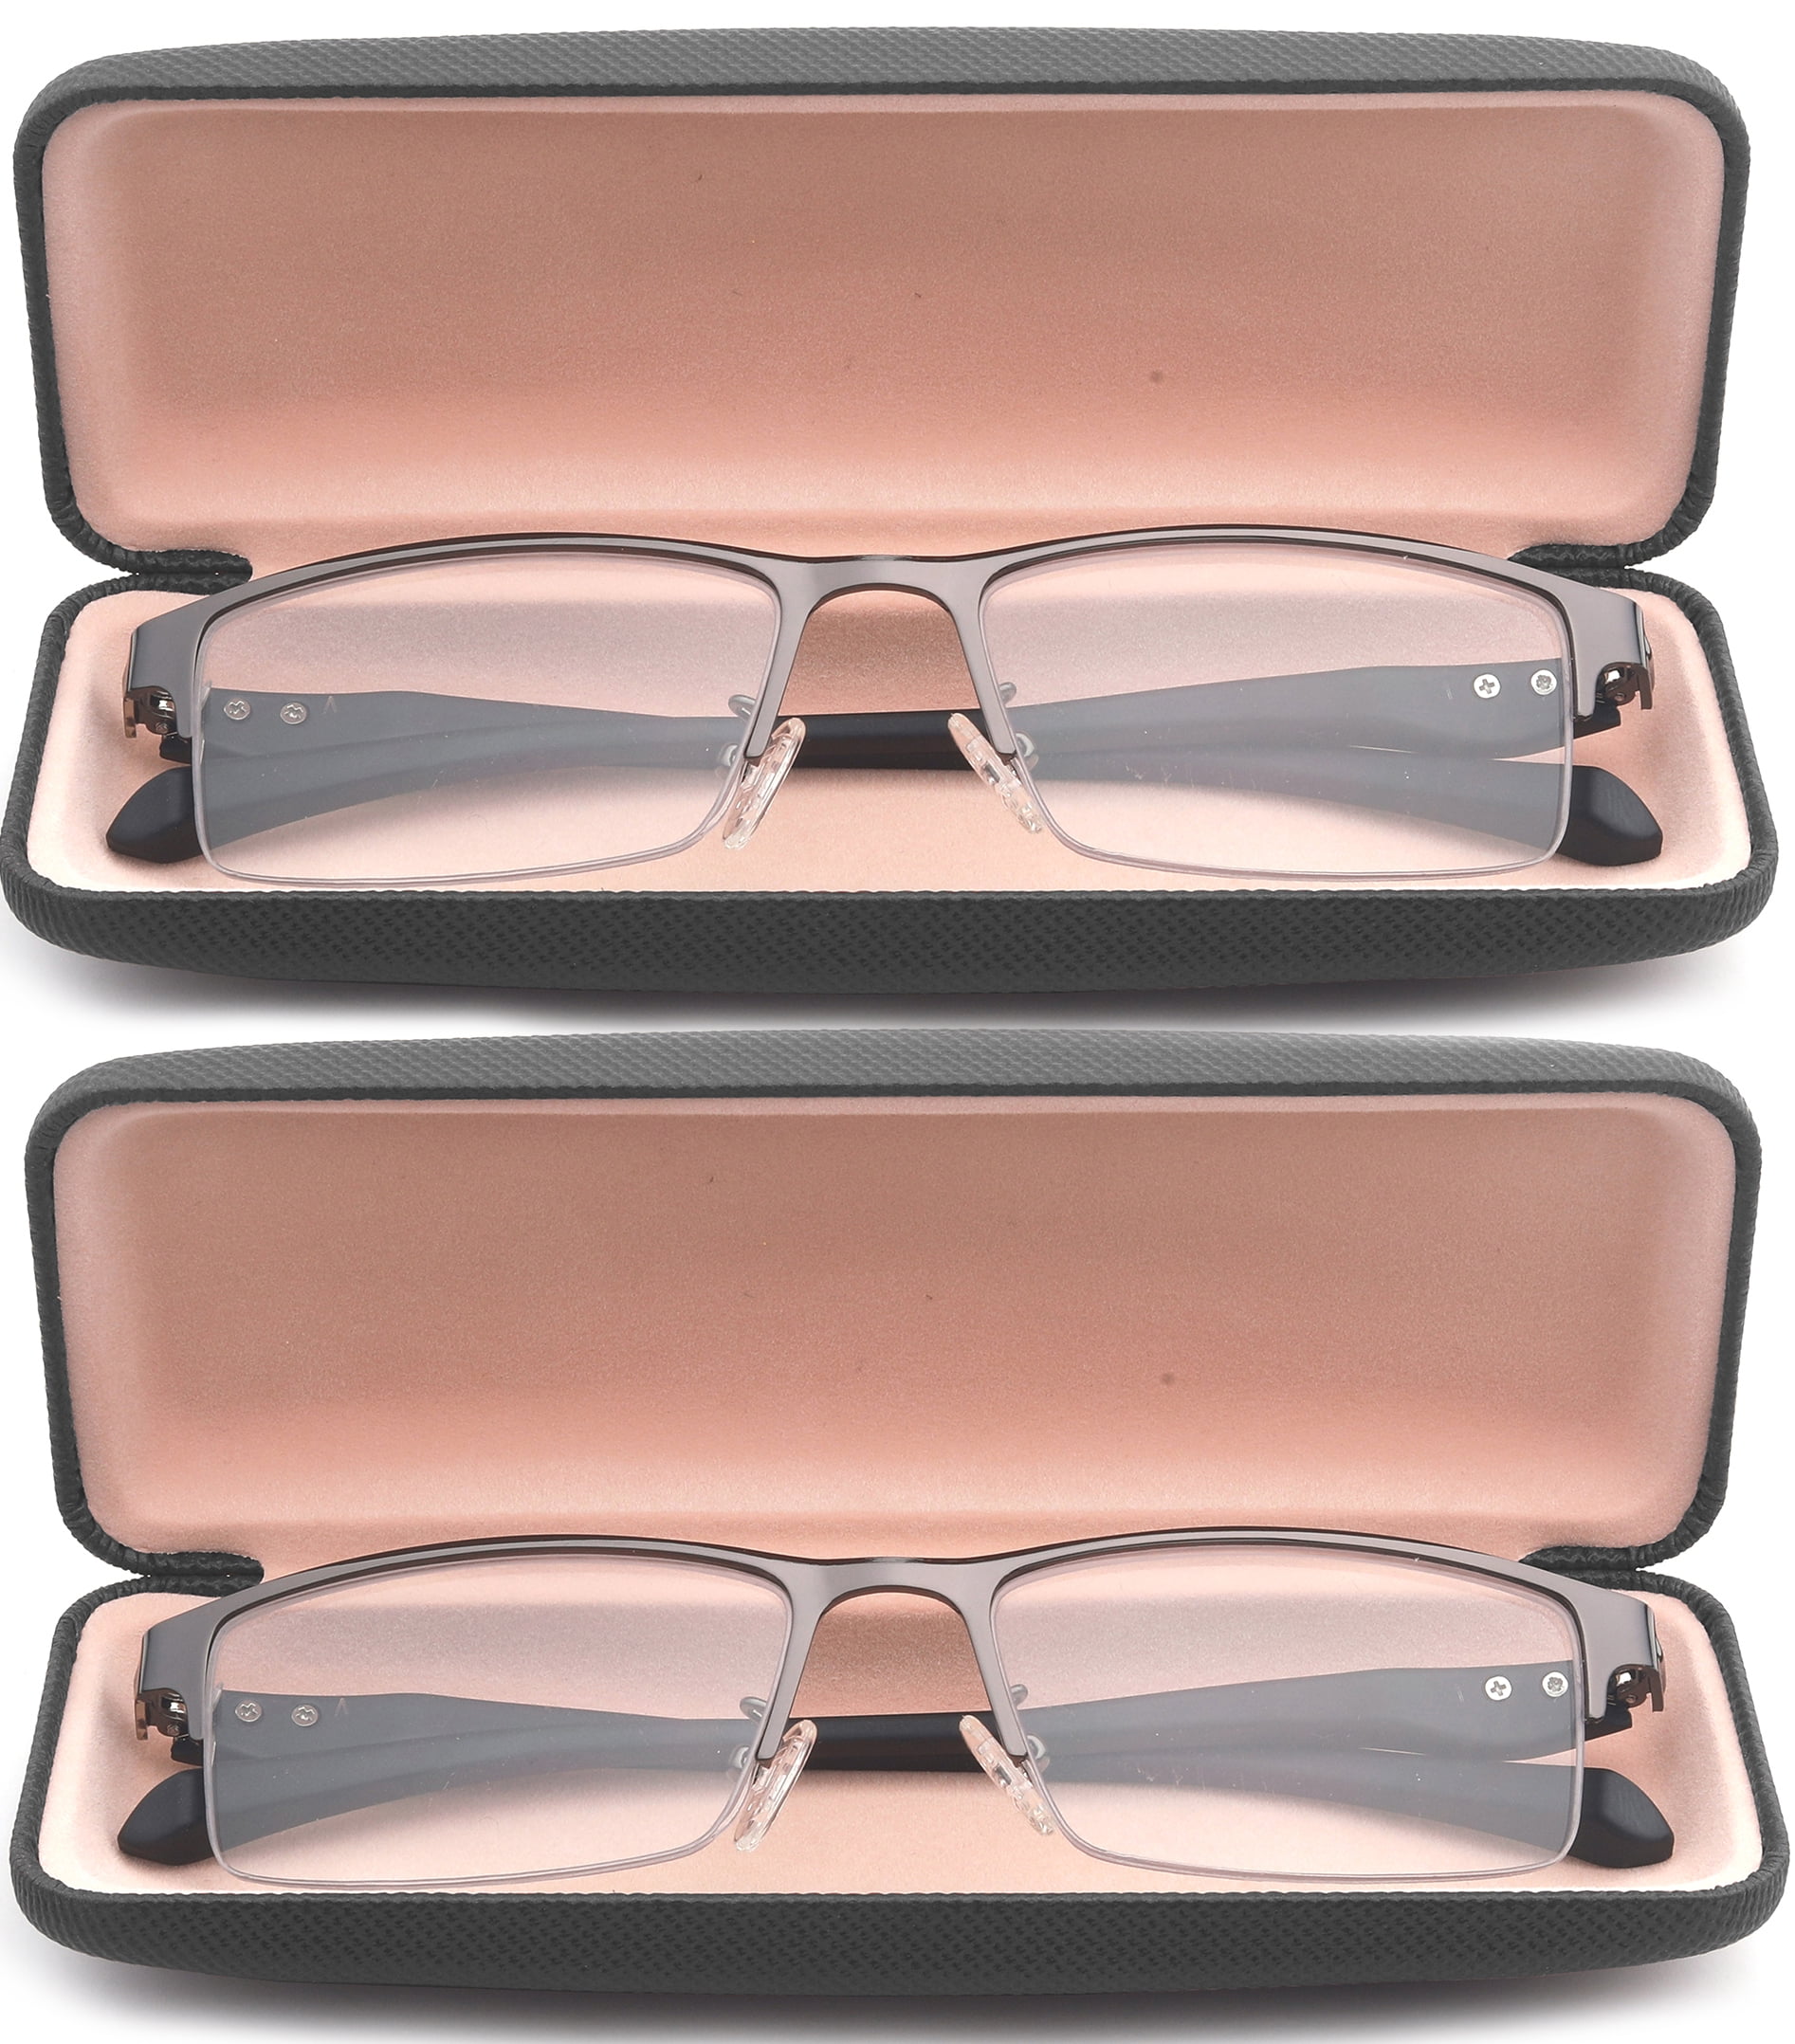 2 Packs Progressive Multifocal Reading Glasses Blue Light Blocking For